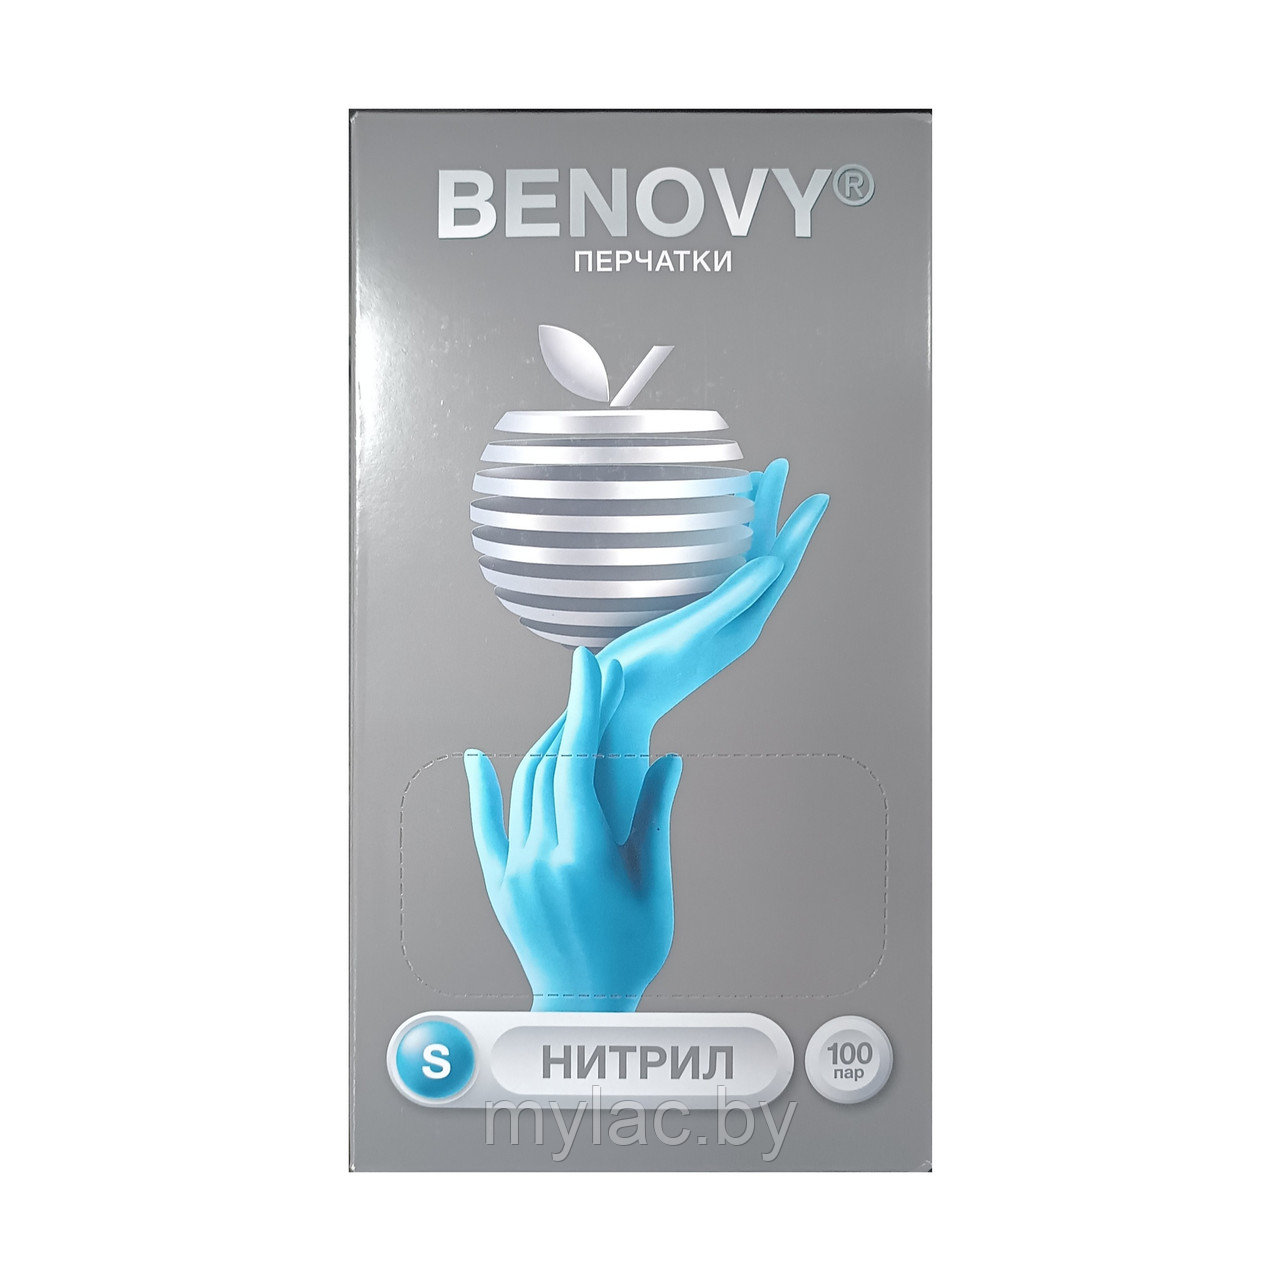 BENOVY Перчатки нитриловые голубые текстурированные размер S 100 пар (200 шт.)